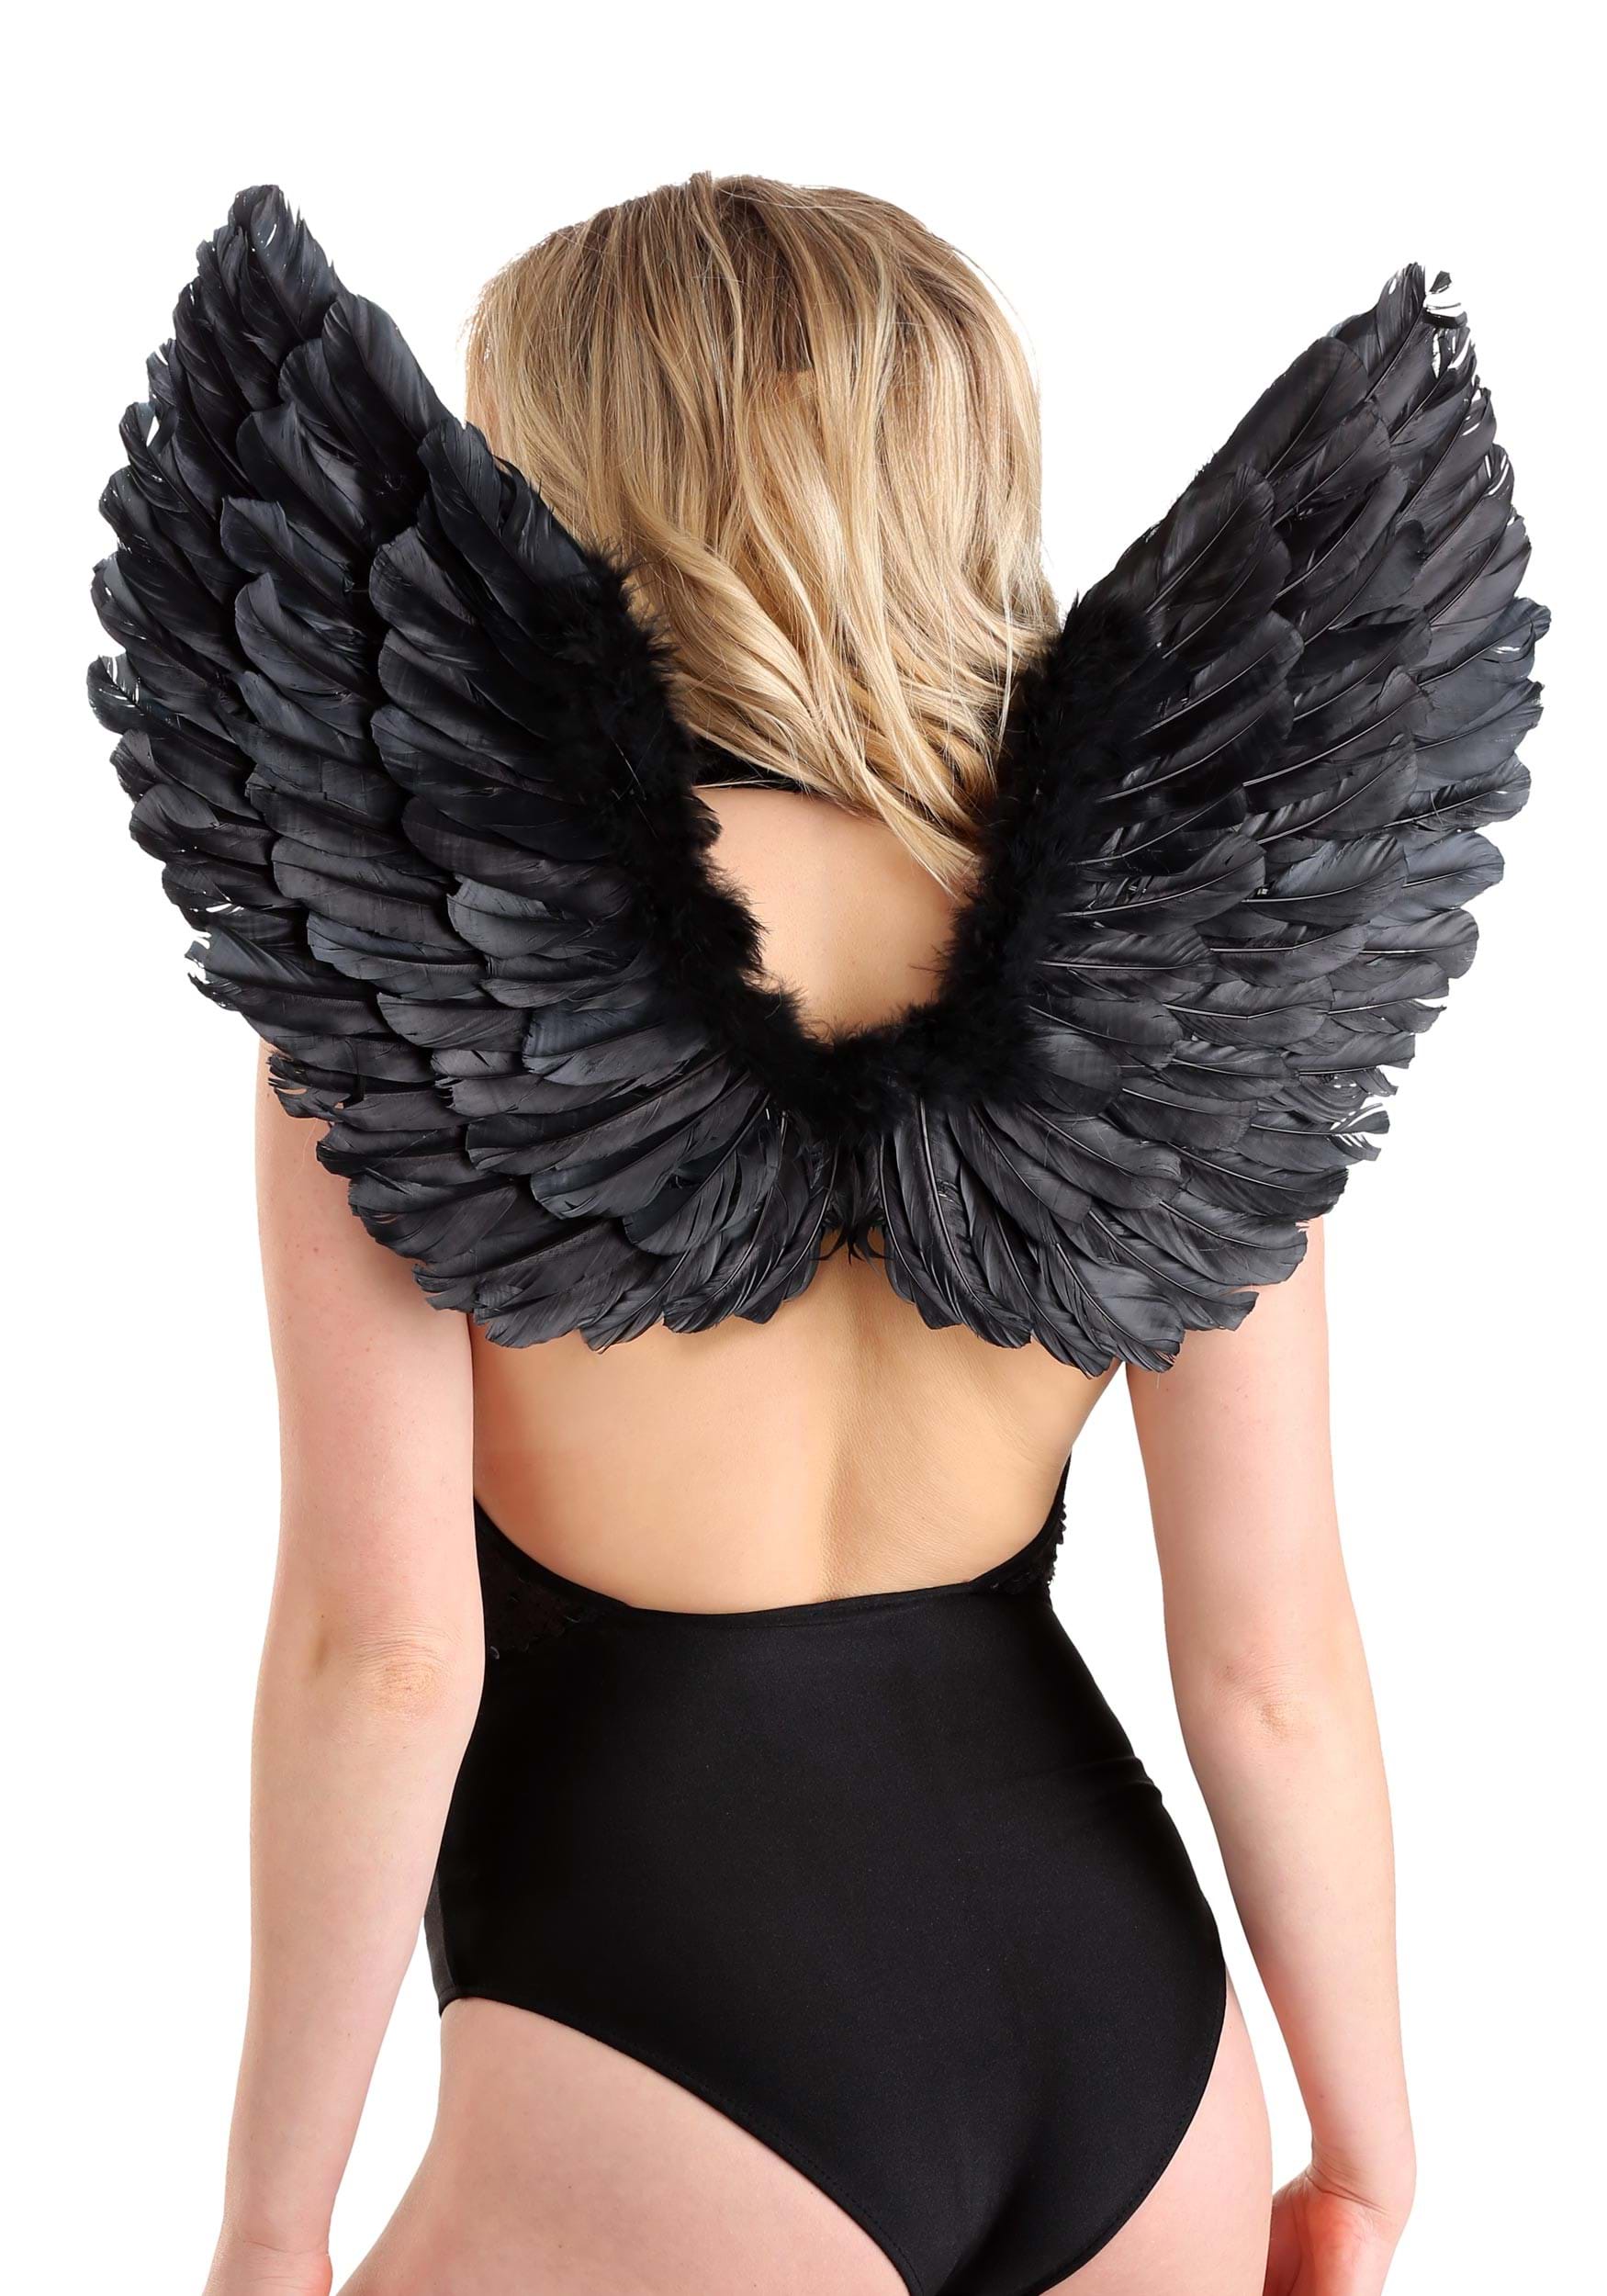 Black Angel Wings Costume Set